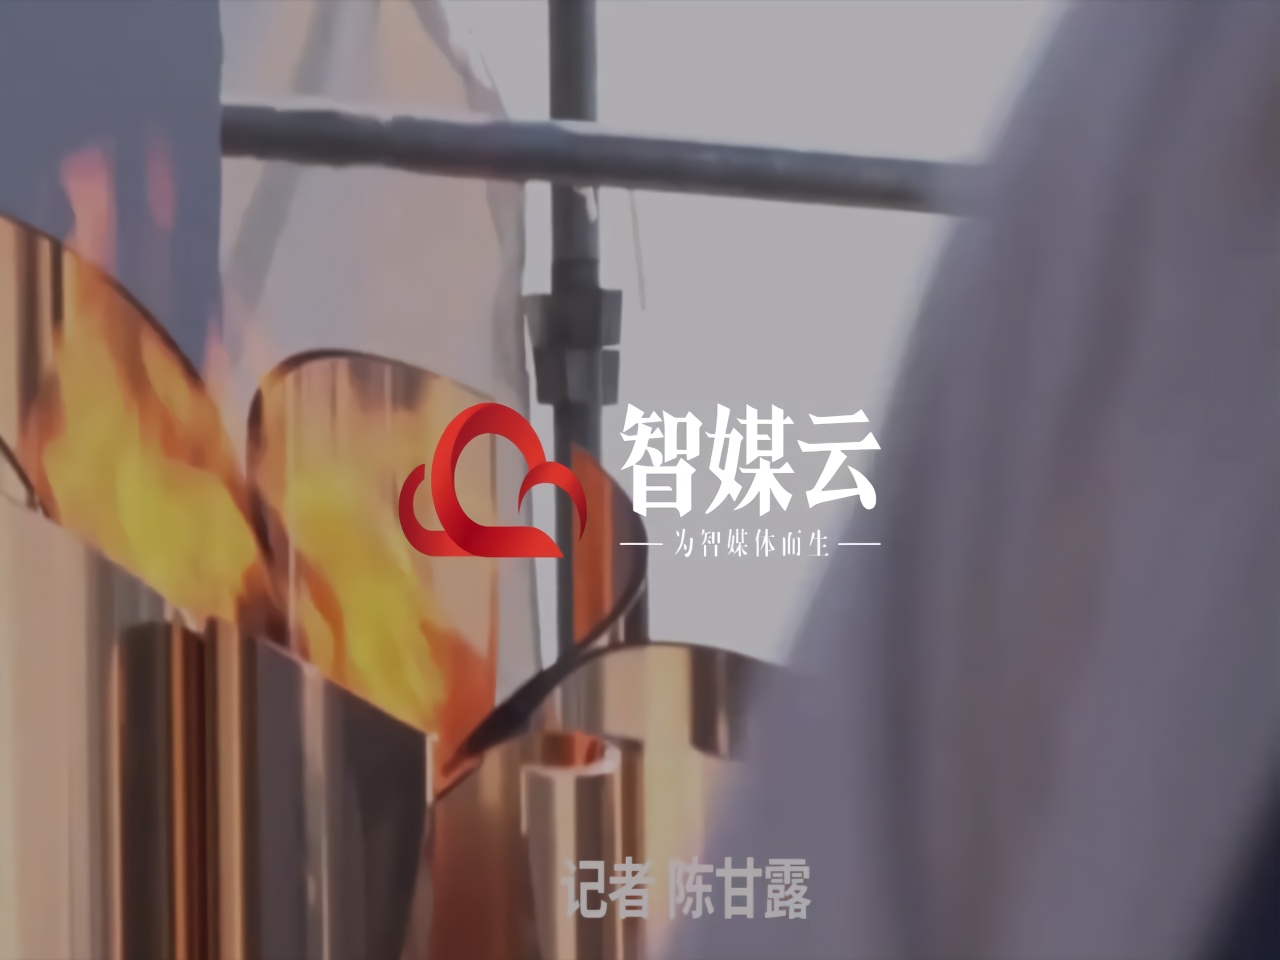 30秒 | 东京奥运圣火在日保存1年5个月 地点暂“保密”